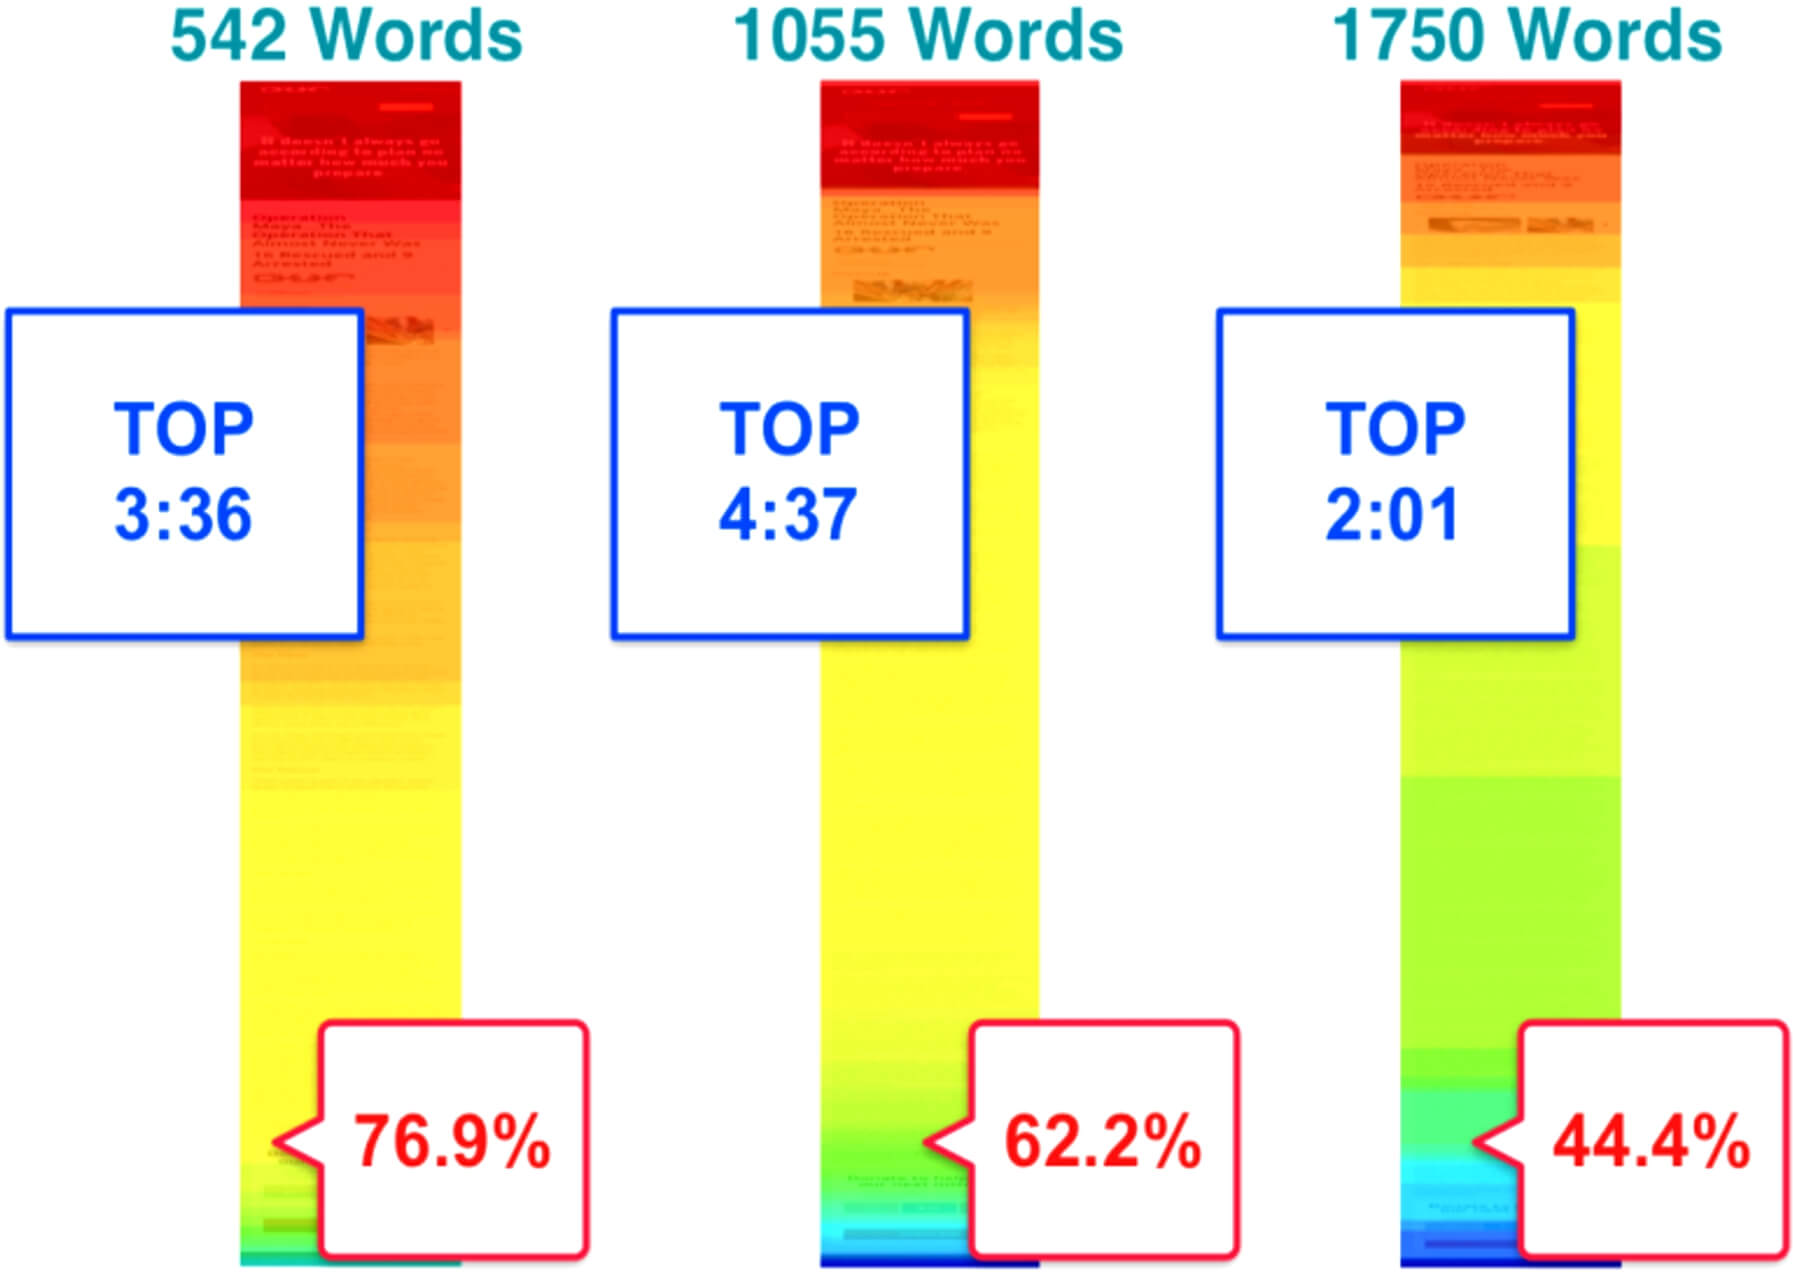 Результаты исследования чтения текстов с мобильного телефона. Изображение из блога Kissmetrics Blog. 